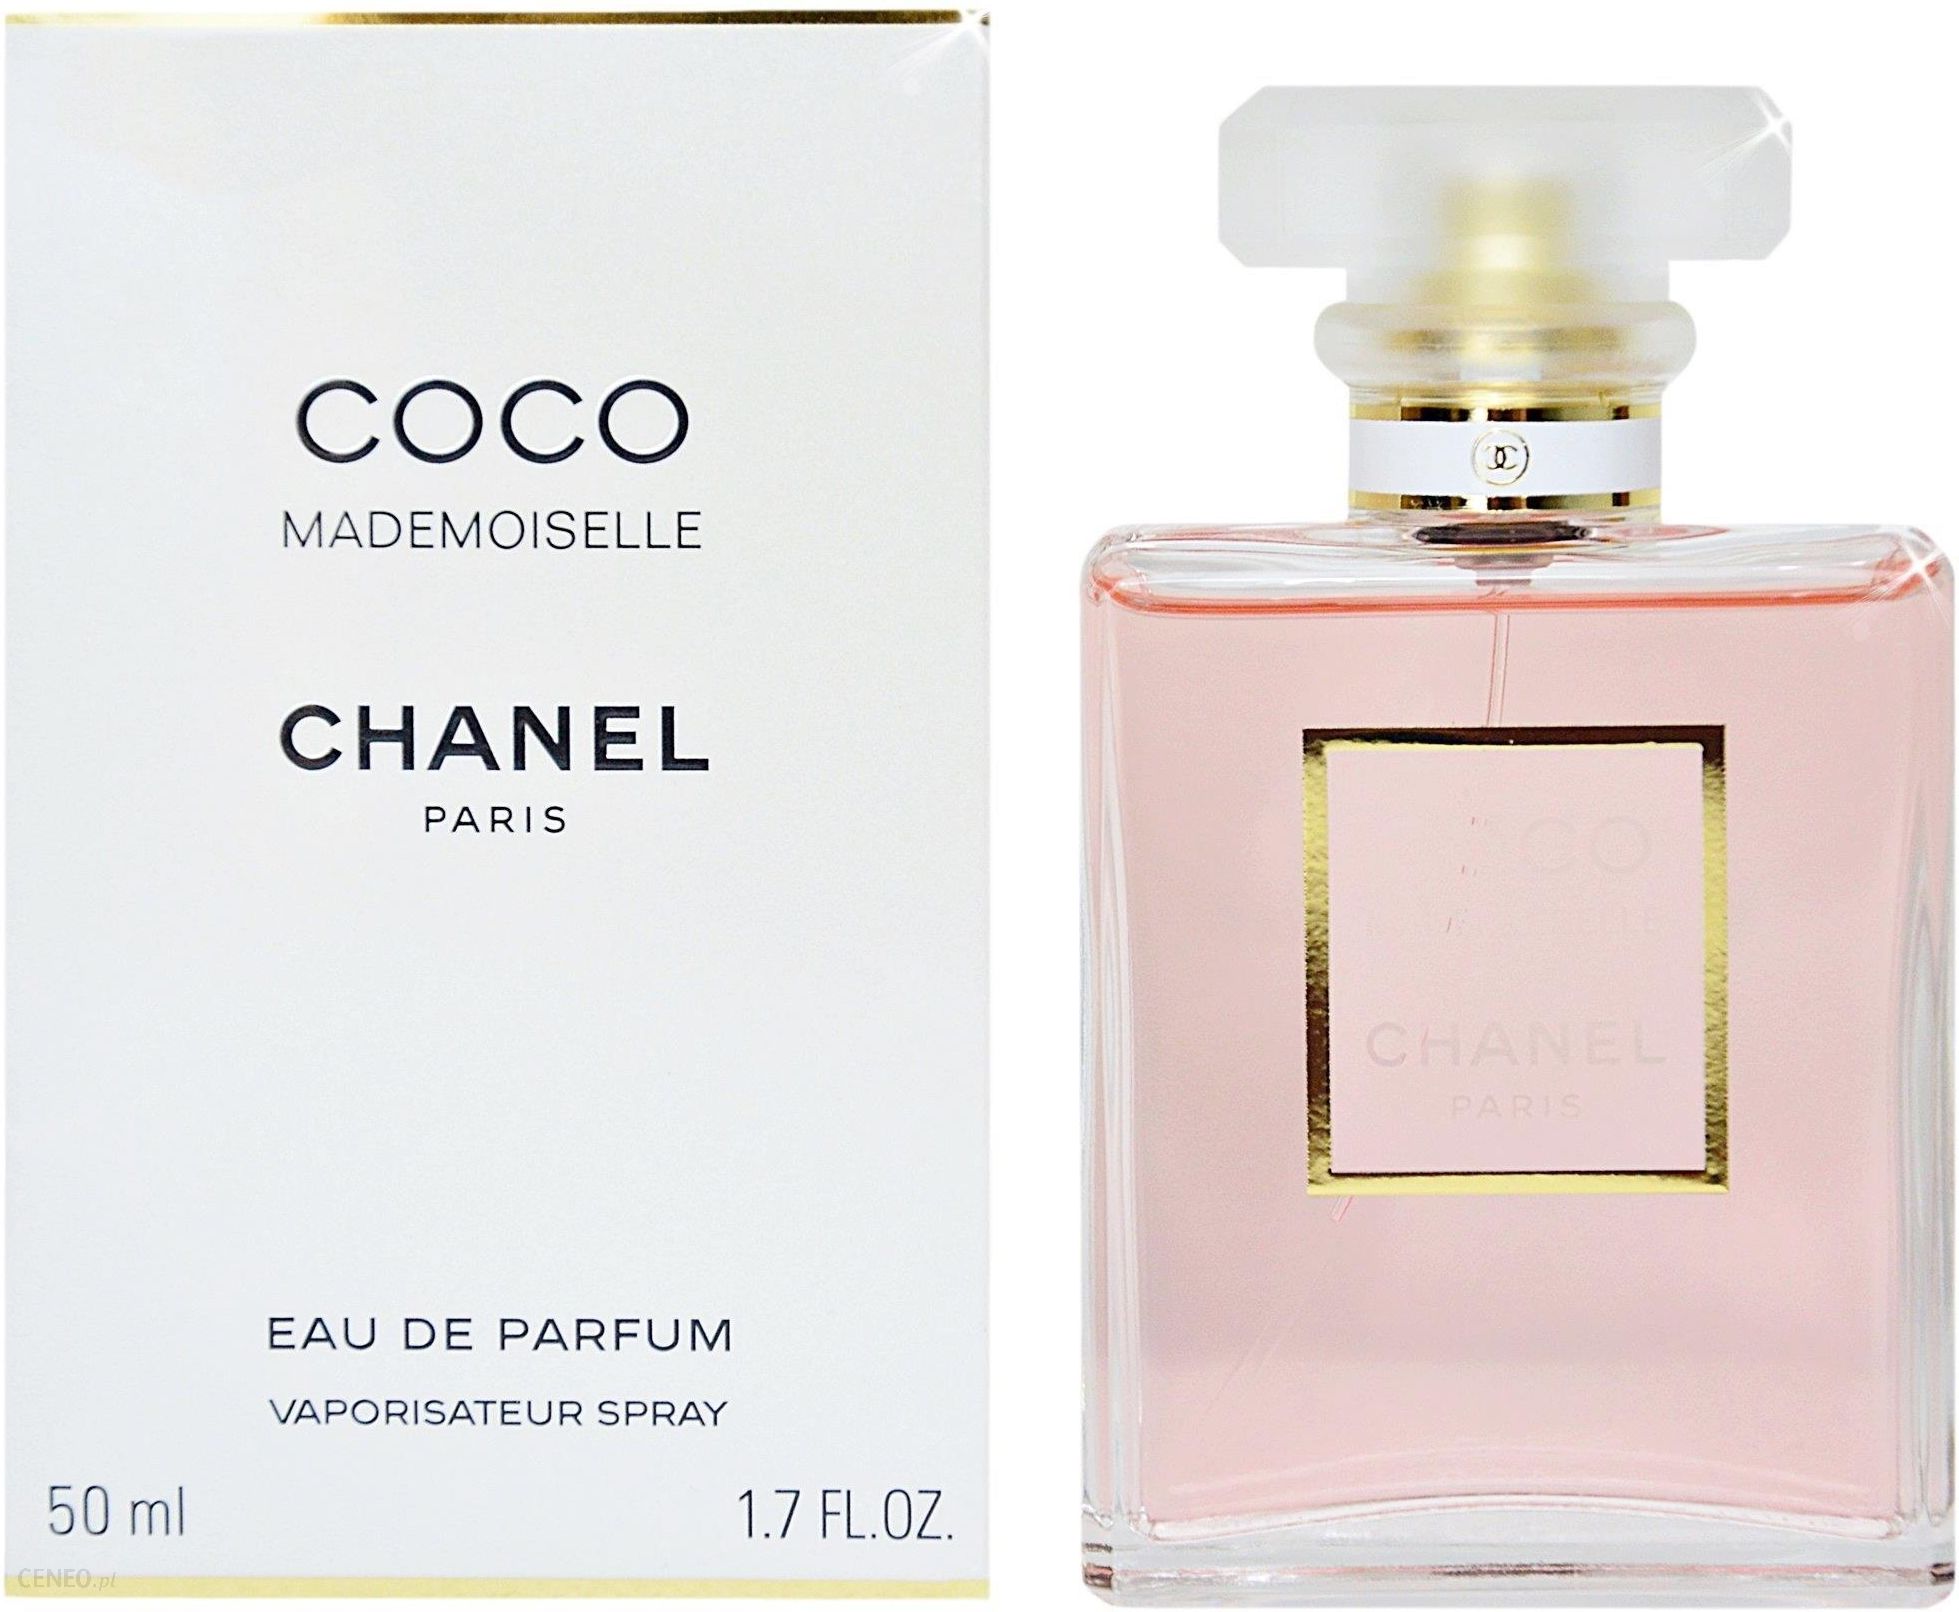 Nước hoa Chanel Coco Mademoiselle chính hãng